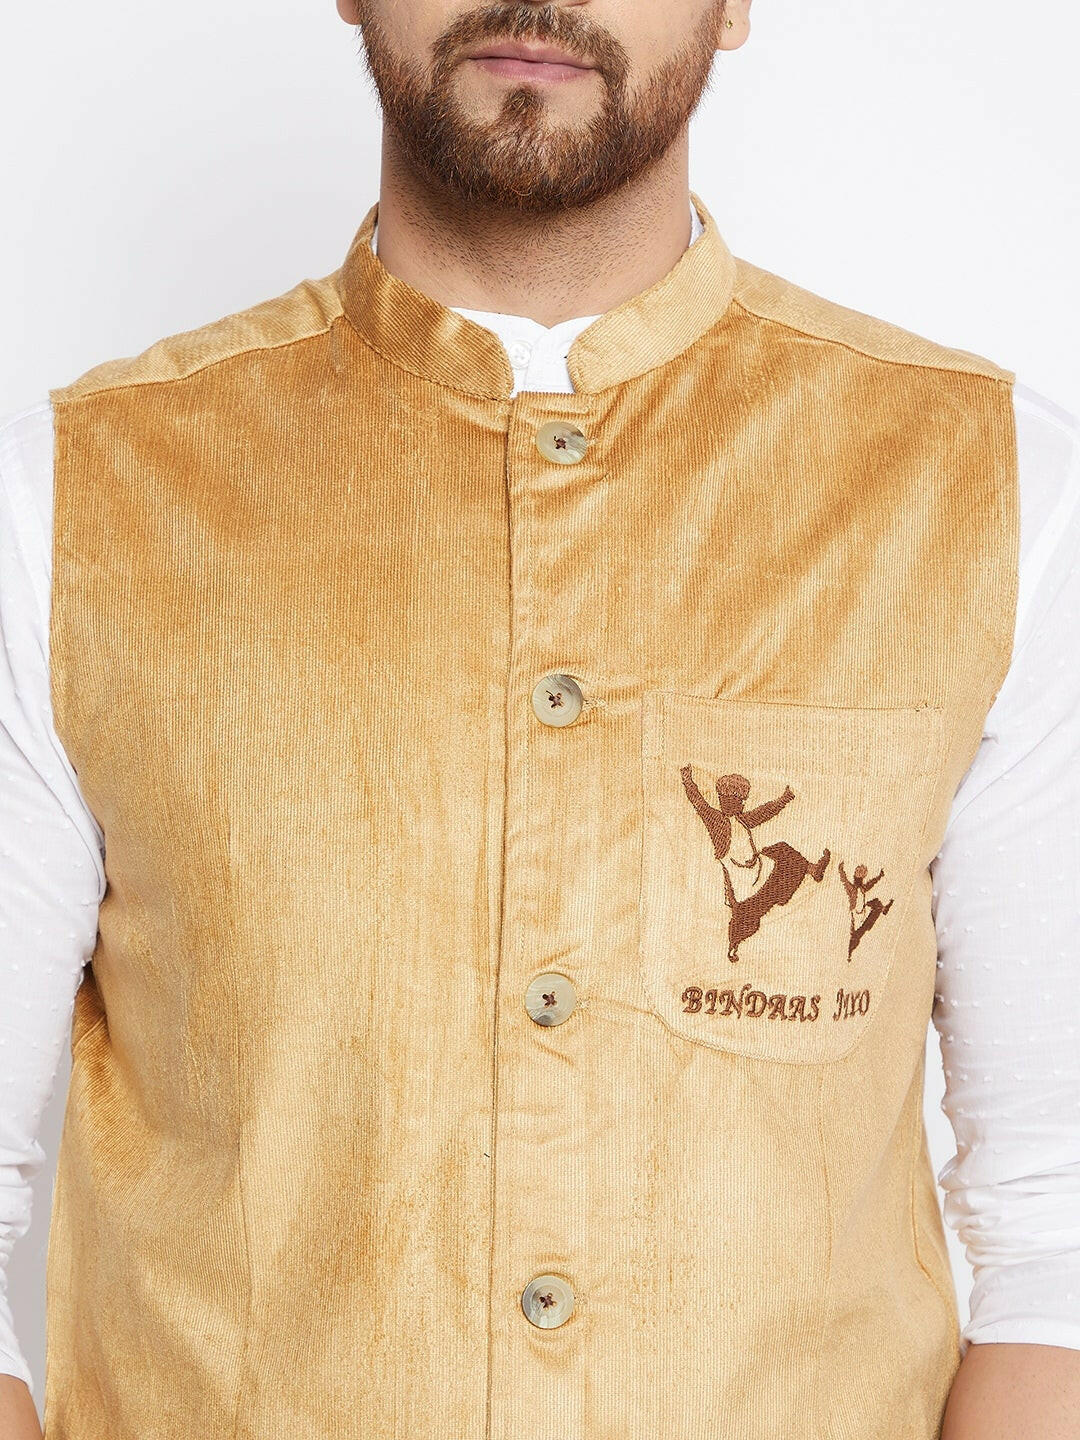 Bindaas Jiyo Woven Design Jacket